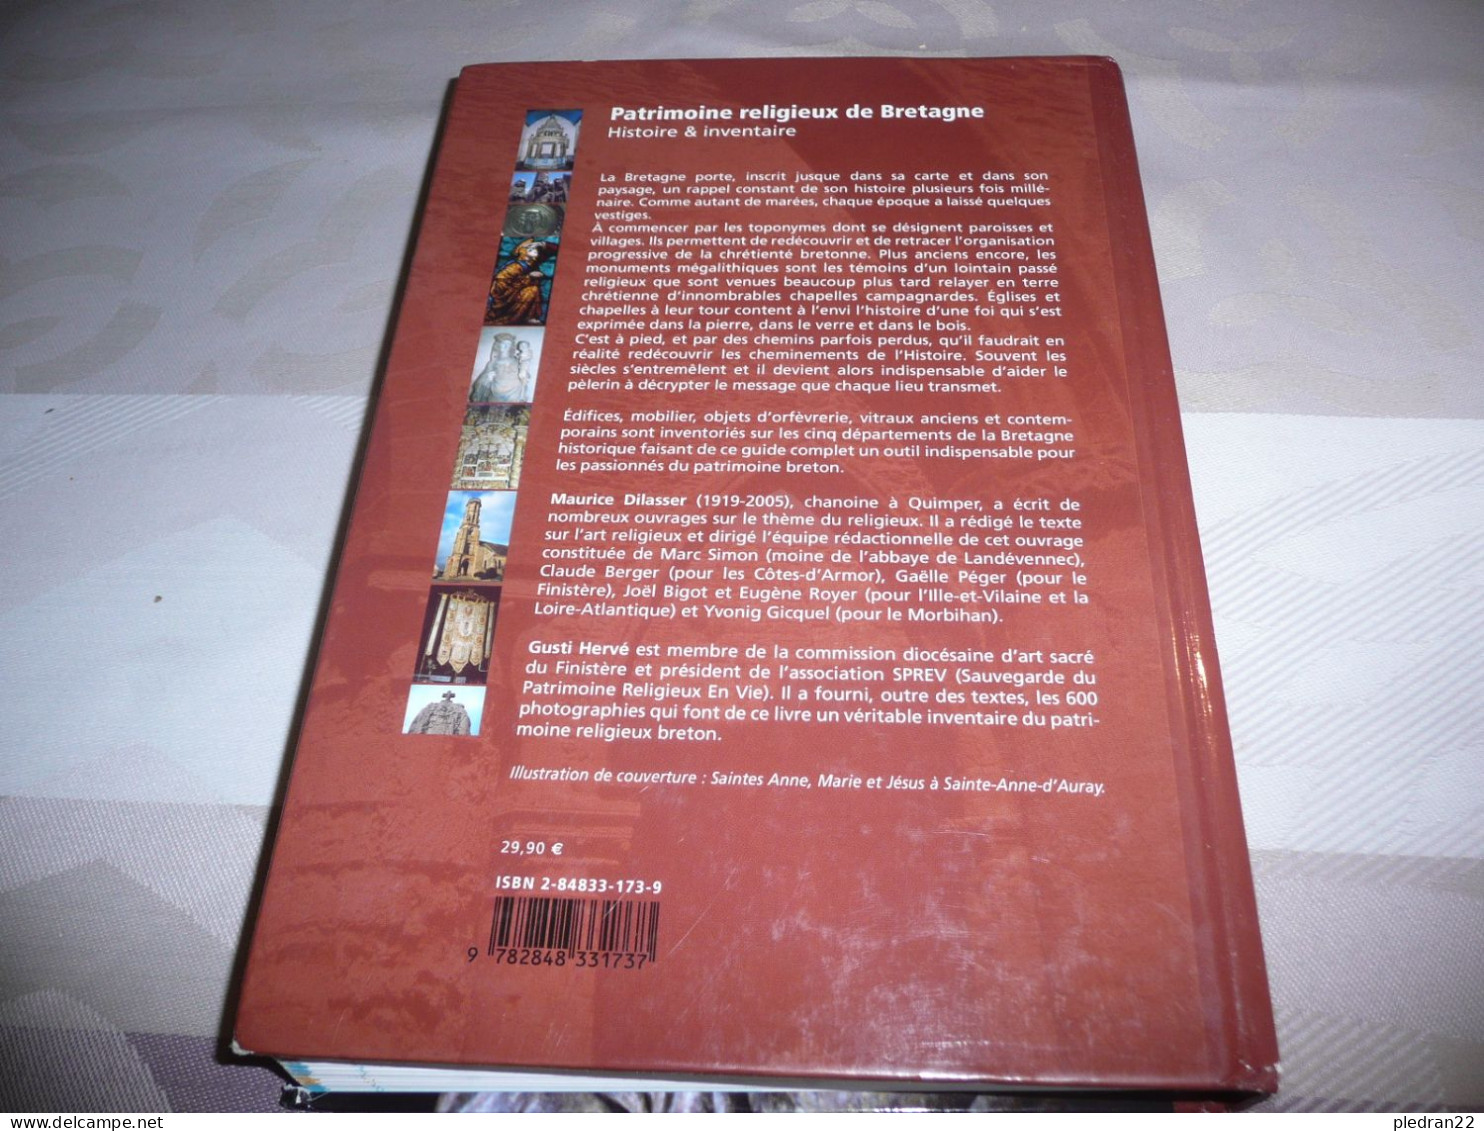 MAURICE DILASSER GUSTI HERVE PATRIMOINE RELIGIEUX DE BRETAGNE EDITIONS LE TELEGRAMME 2006 - Bretagne